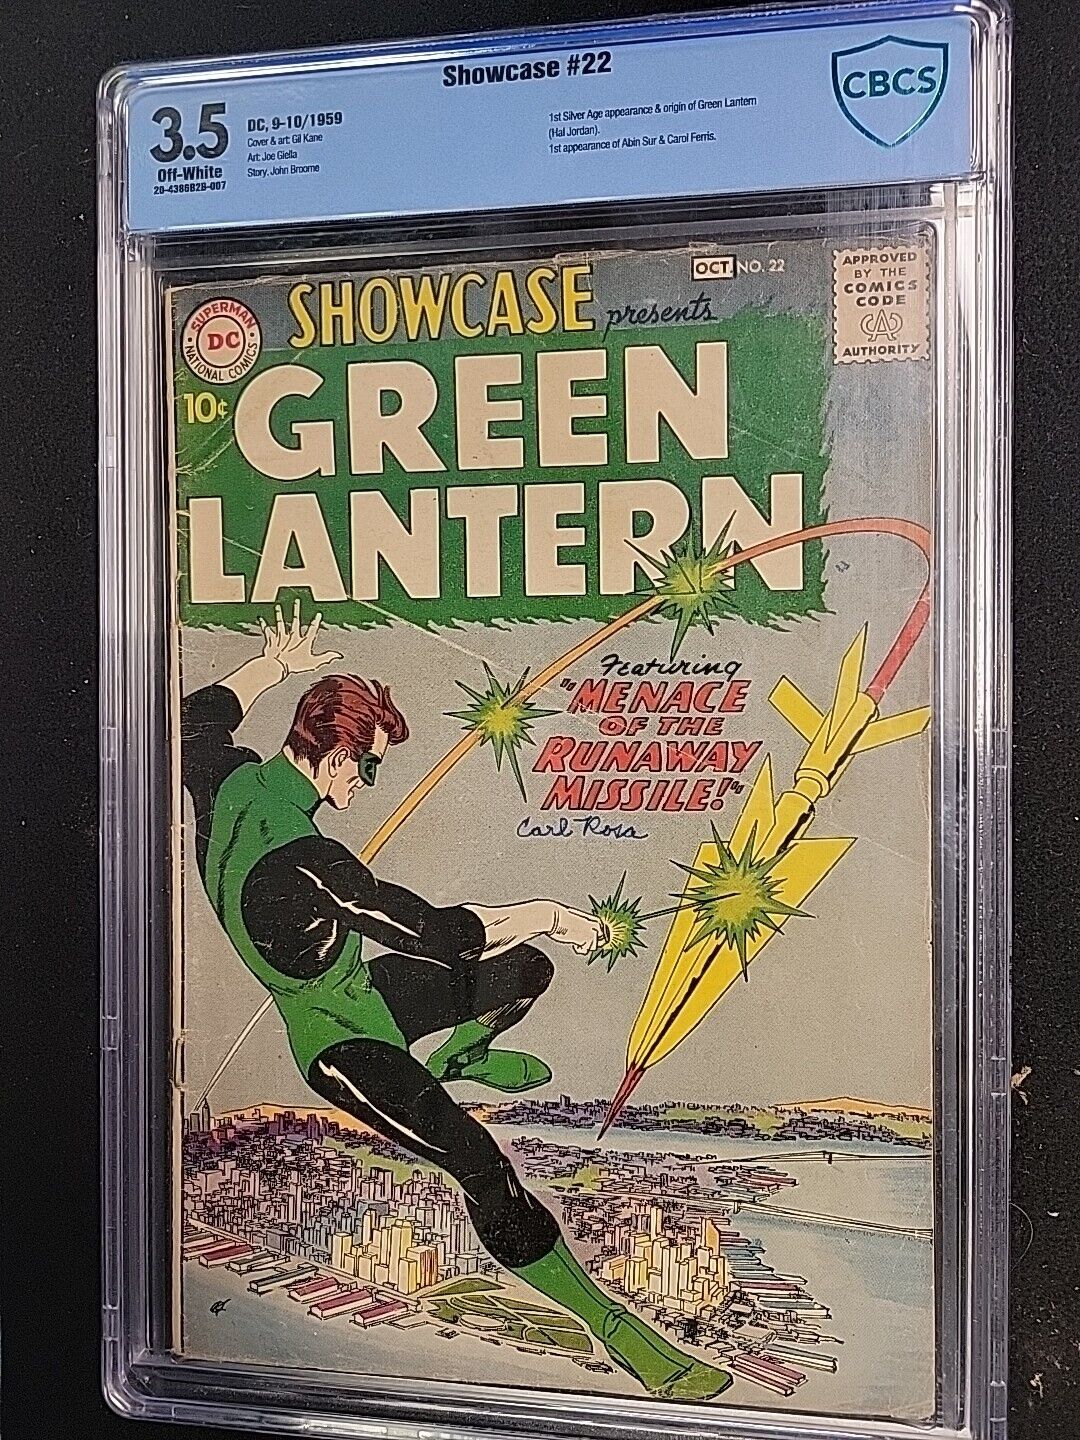 1959 Showcase #22  Origin & 1st app Silver Age Green Lantern. DC KEY CBCS 3.5